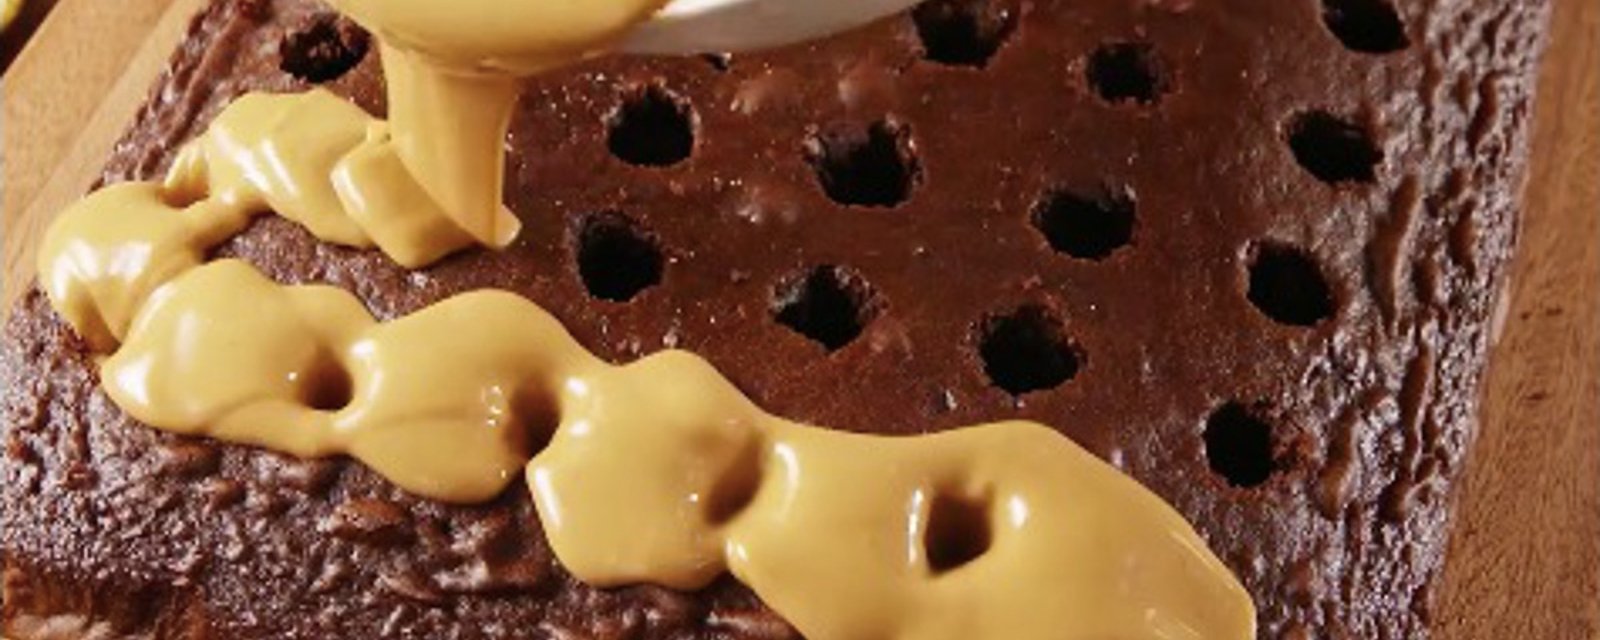 Ce délicieux gâteau troué fera le bonheur des vrais amateurs de chocolat Reese's 